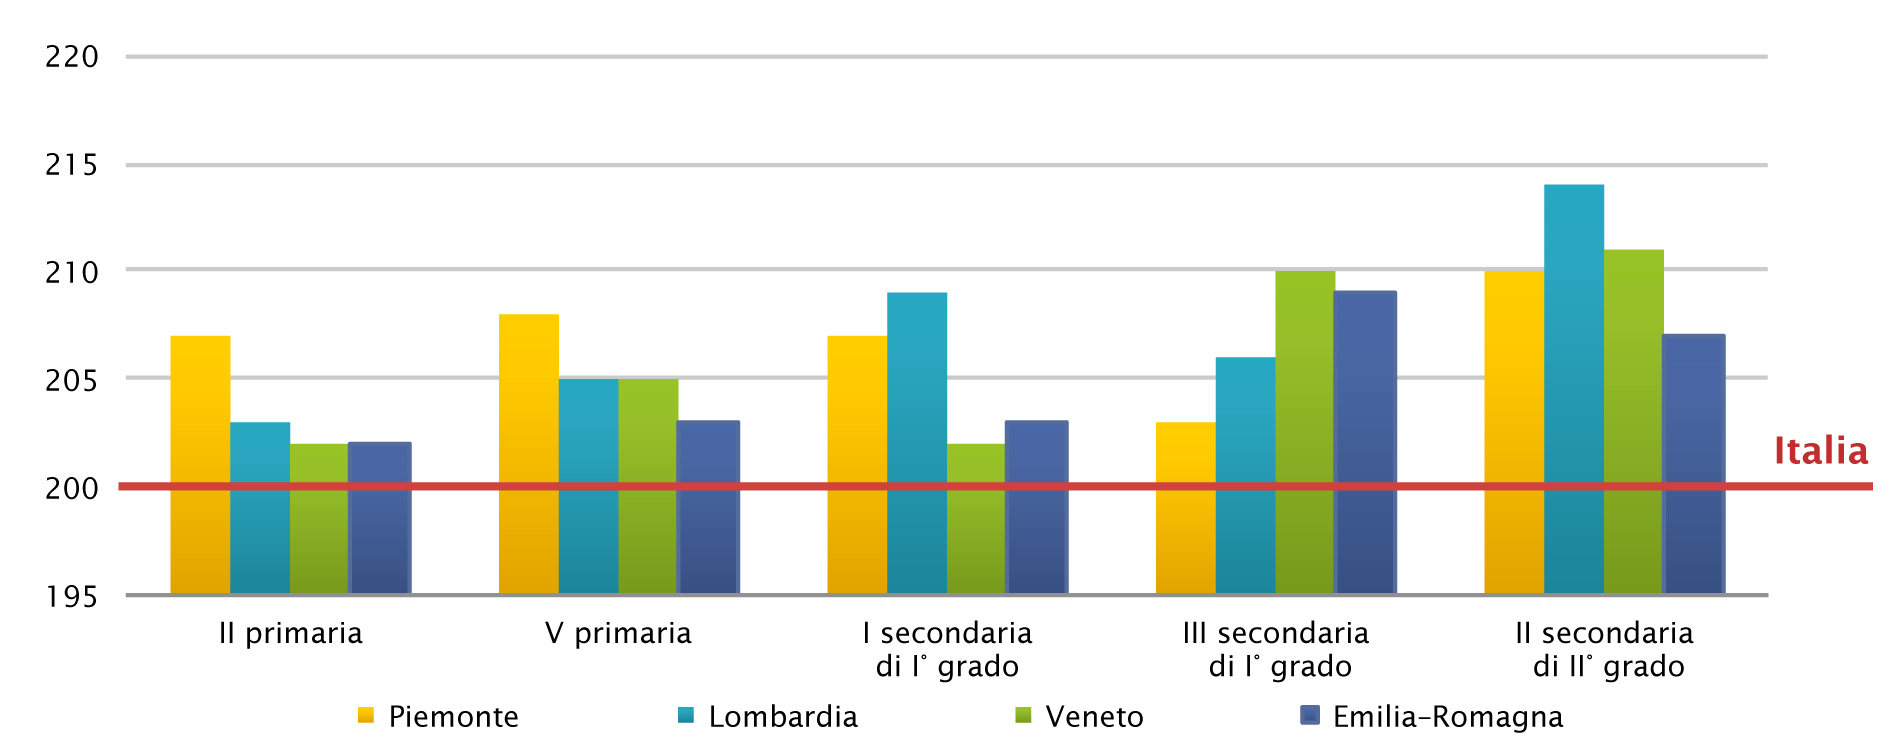 Figura 6 Romagna Risultati in italiano per livello d istruzione in Piemonte, Lombardia, Veneto e Emilia Fonte: INVALSI 2013.